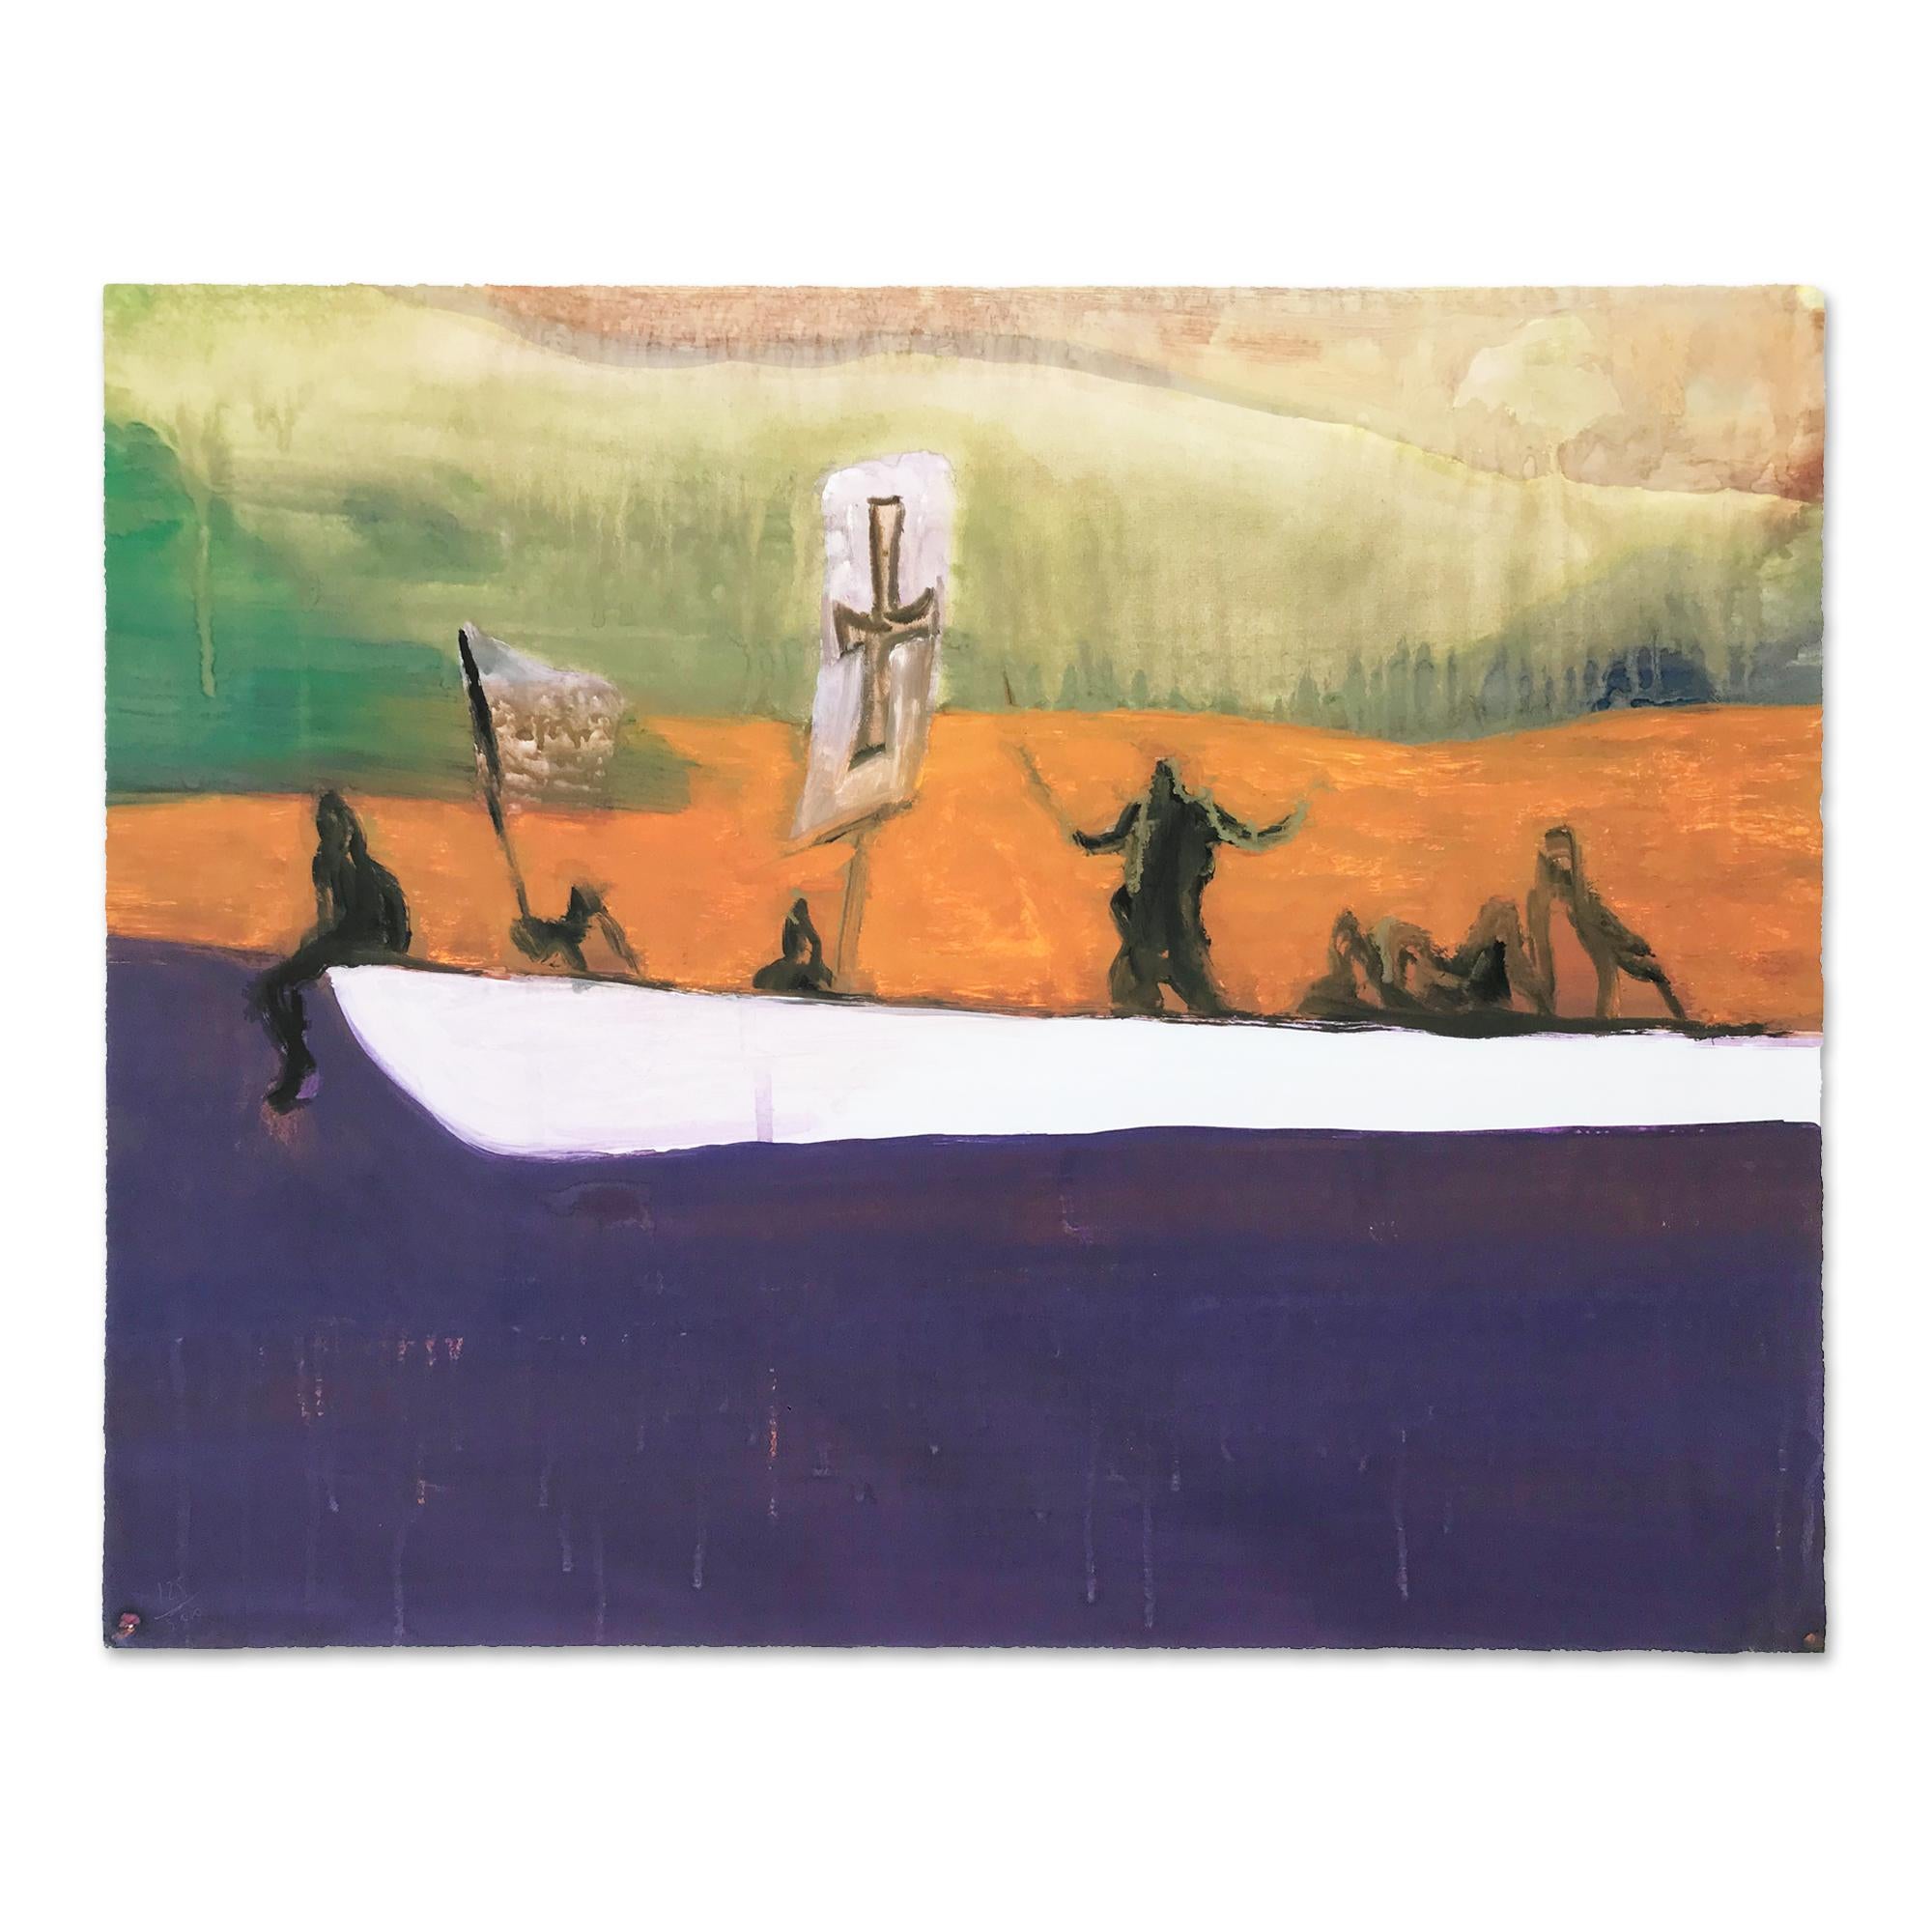 Kanus: signierter Druck, britische zeitgenössische Kunst von Peter Doig